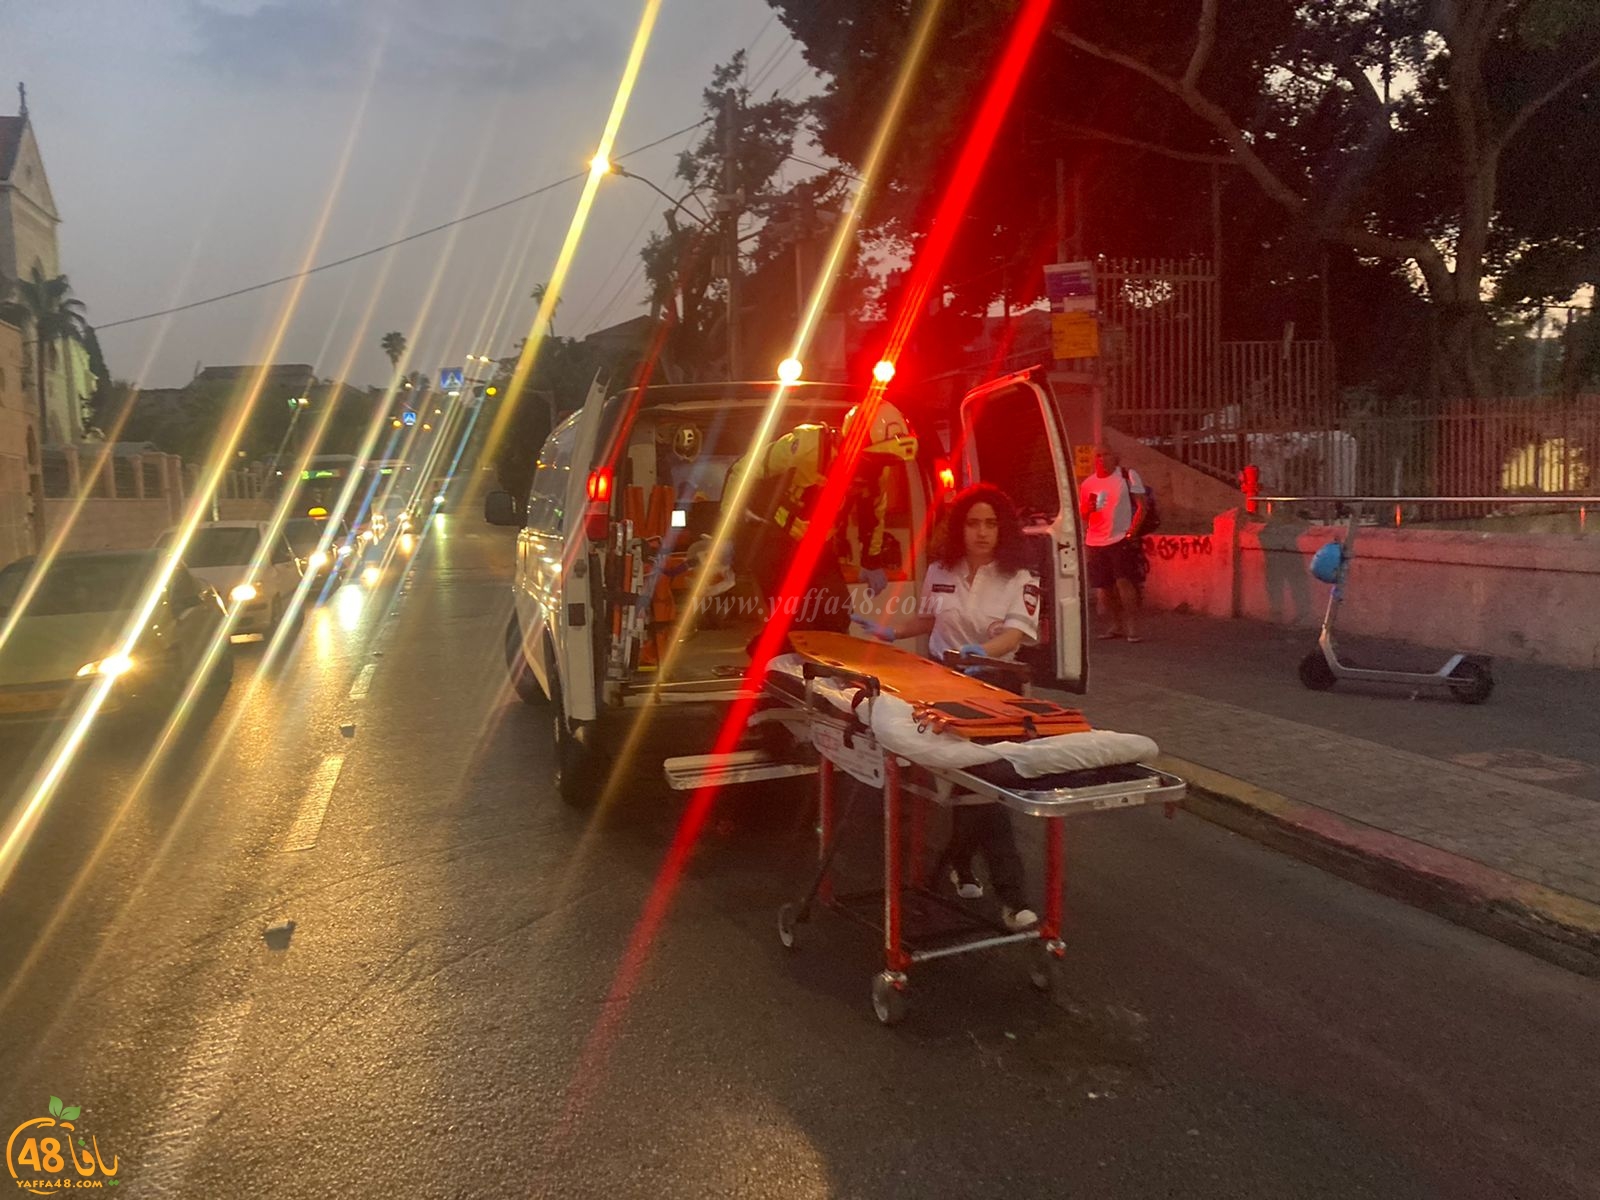  يافا: اصابة متوسطة لسيدة بحادث دهس ضرب وهرب